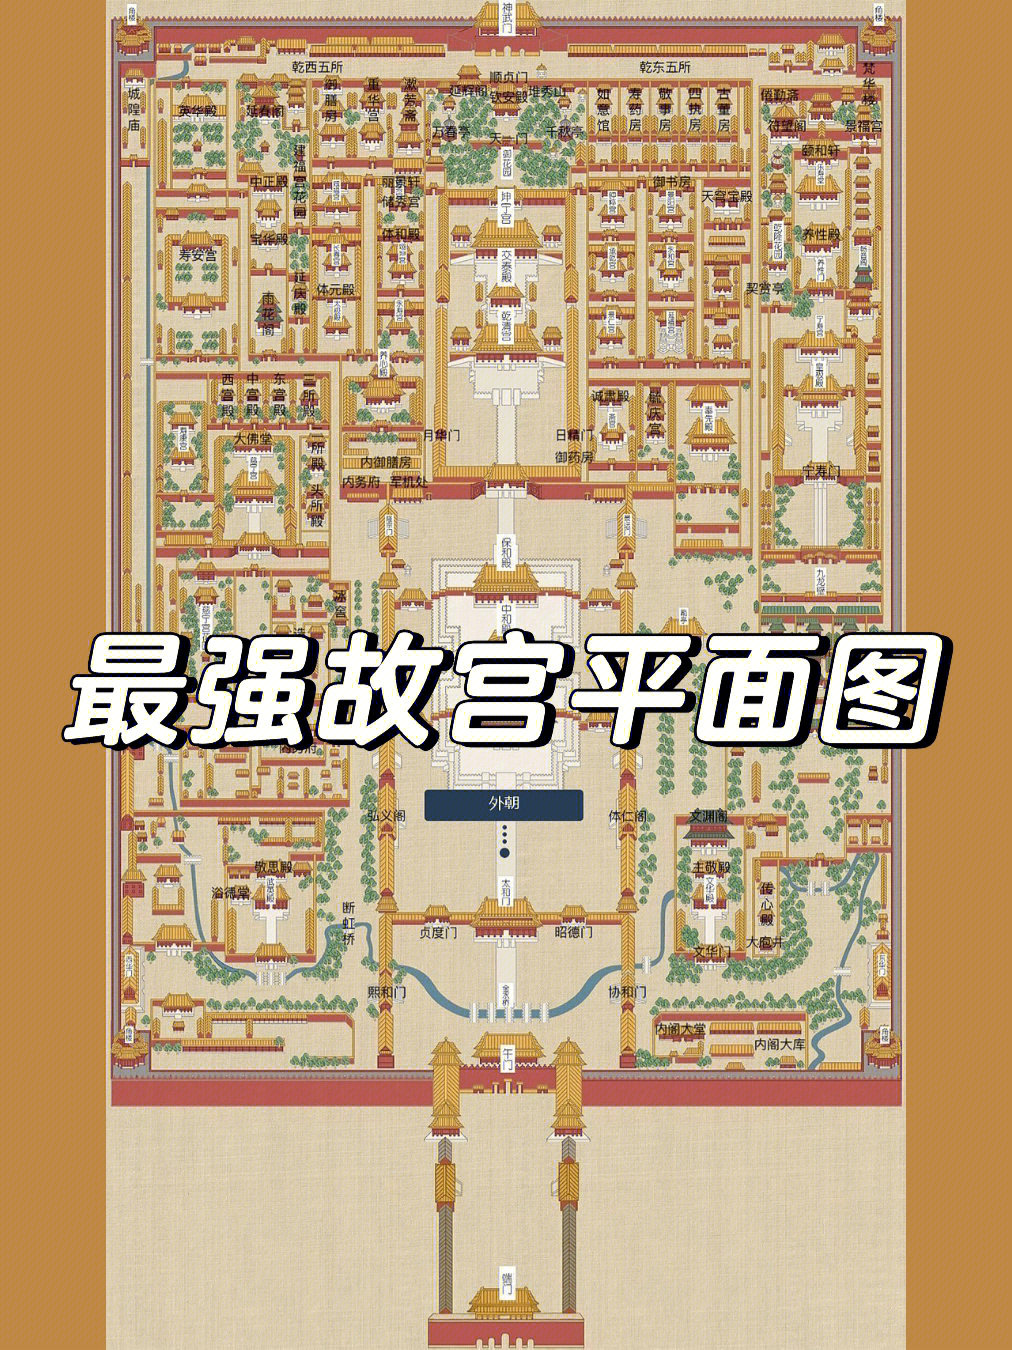 故宫地图全景地图高清图片